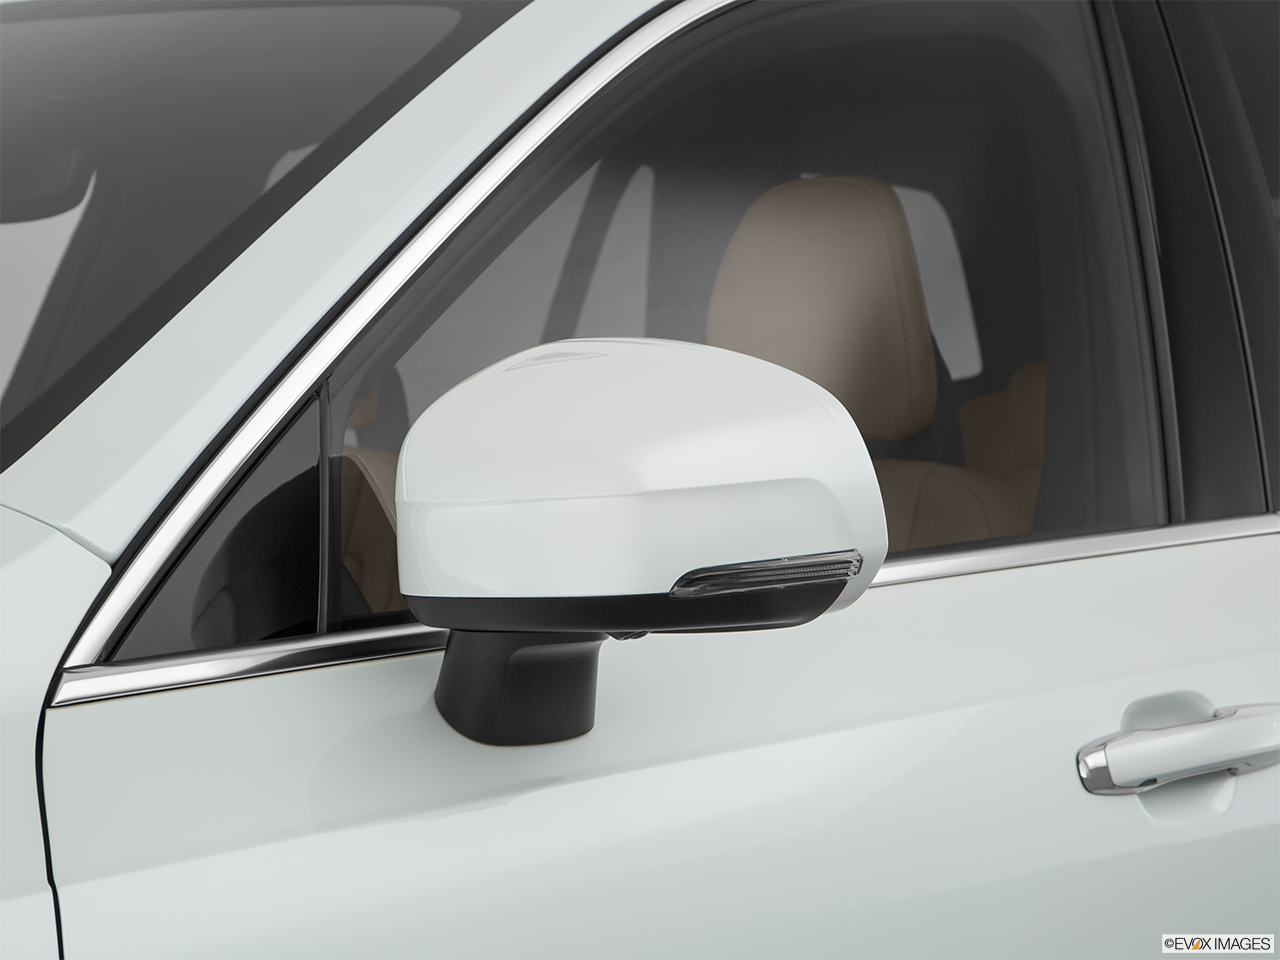 2018 Volvo XC90 T8 Inscription eAWD Plug-in Hybrid Driver's side mirror, 3_4 rear 